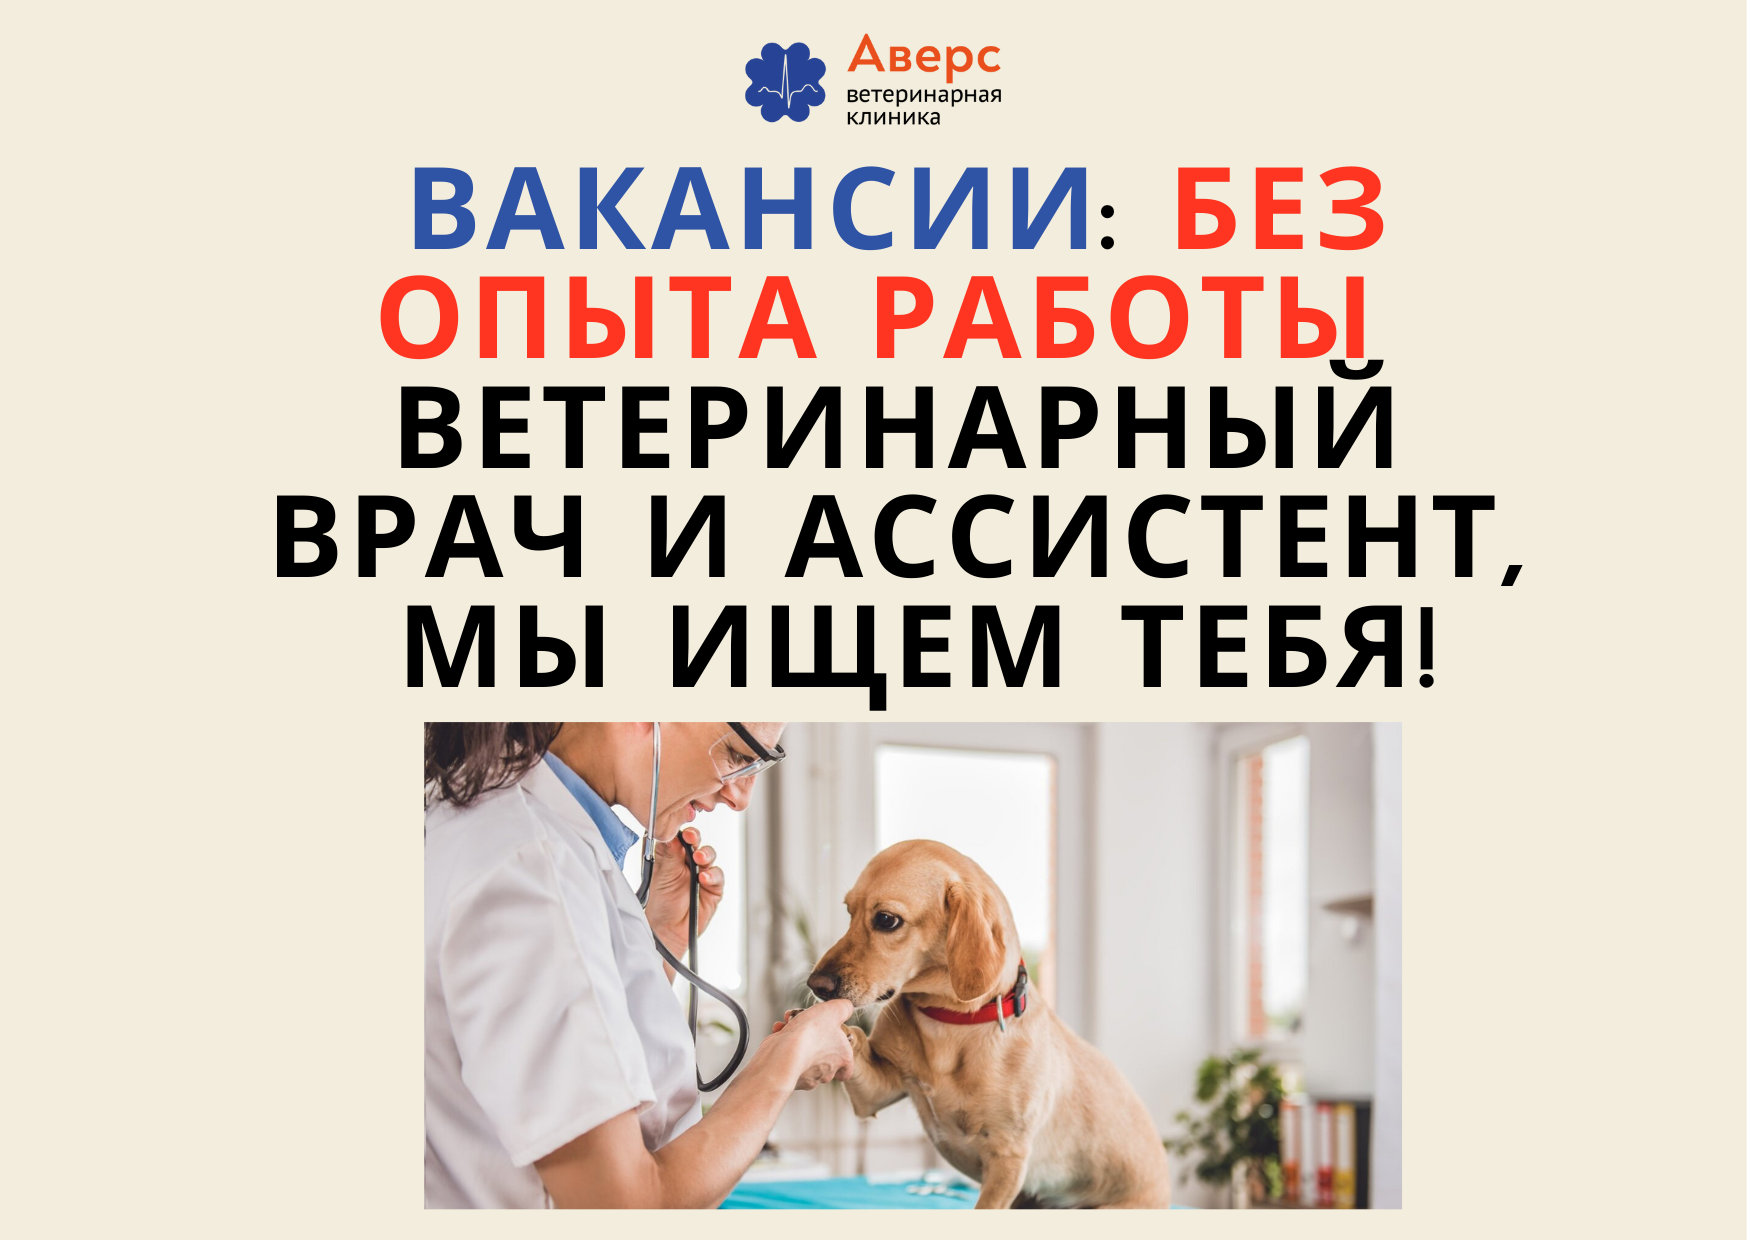 Ветеринарная клиника Аверс-Путилково: ВЕТЕРИНАРНЫЙ ВРАЧ и АССИСТЕНТ